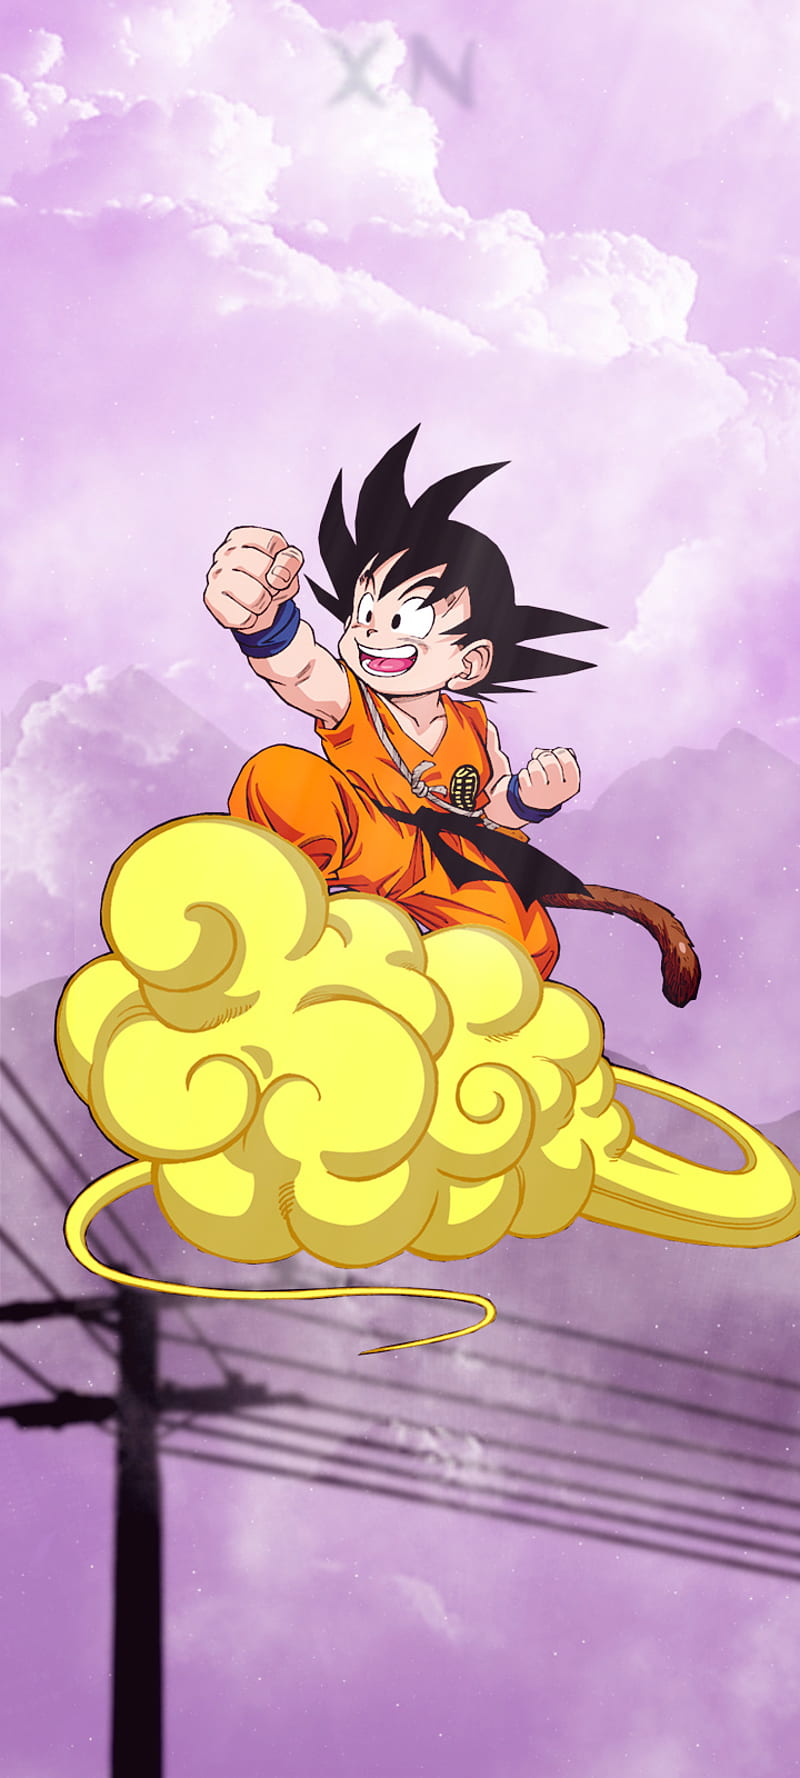 Goku nhỏ tuổi đang bay lượn trên bầu trời xanh tươi của Dragon Ball Z, hình ảnh này khiến người hâm mộ nhớ lại kí ức tuổi thơ của mình. Hãy truy cập ngay vào hình nền Kid Goku Flying để chiêm ngưỡng và cảm nhận sự ngọt ngào của ký ức tuổi thơ.